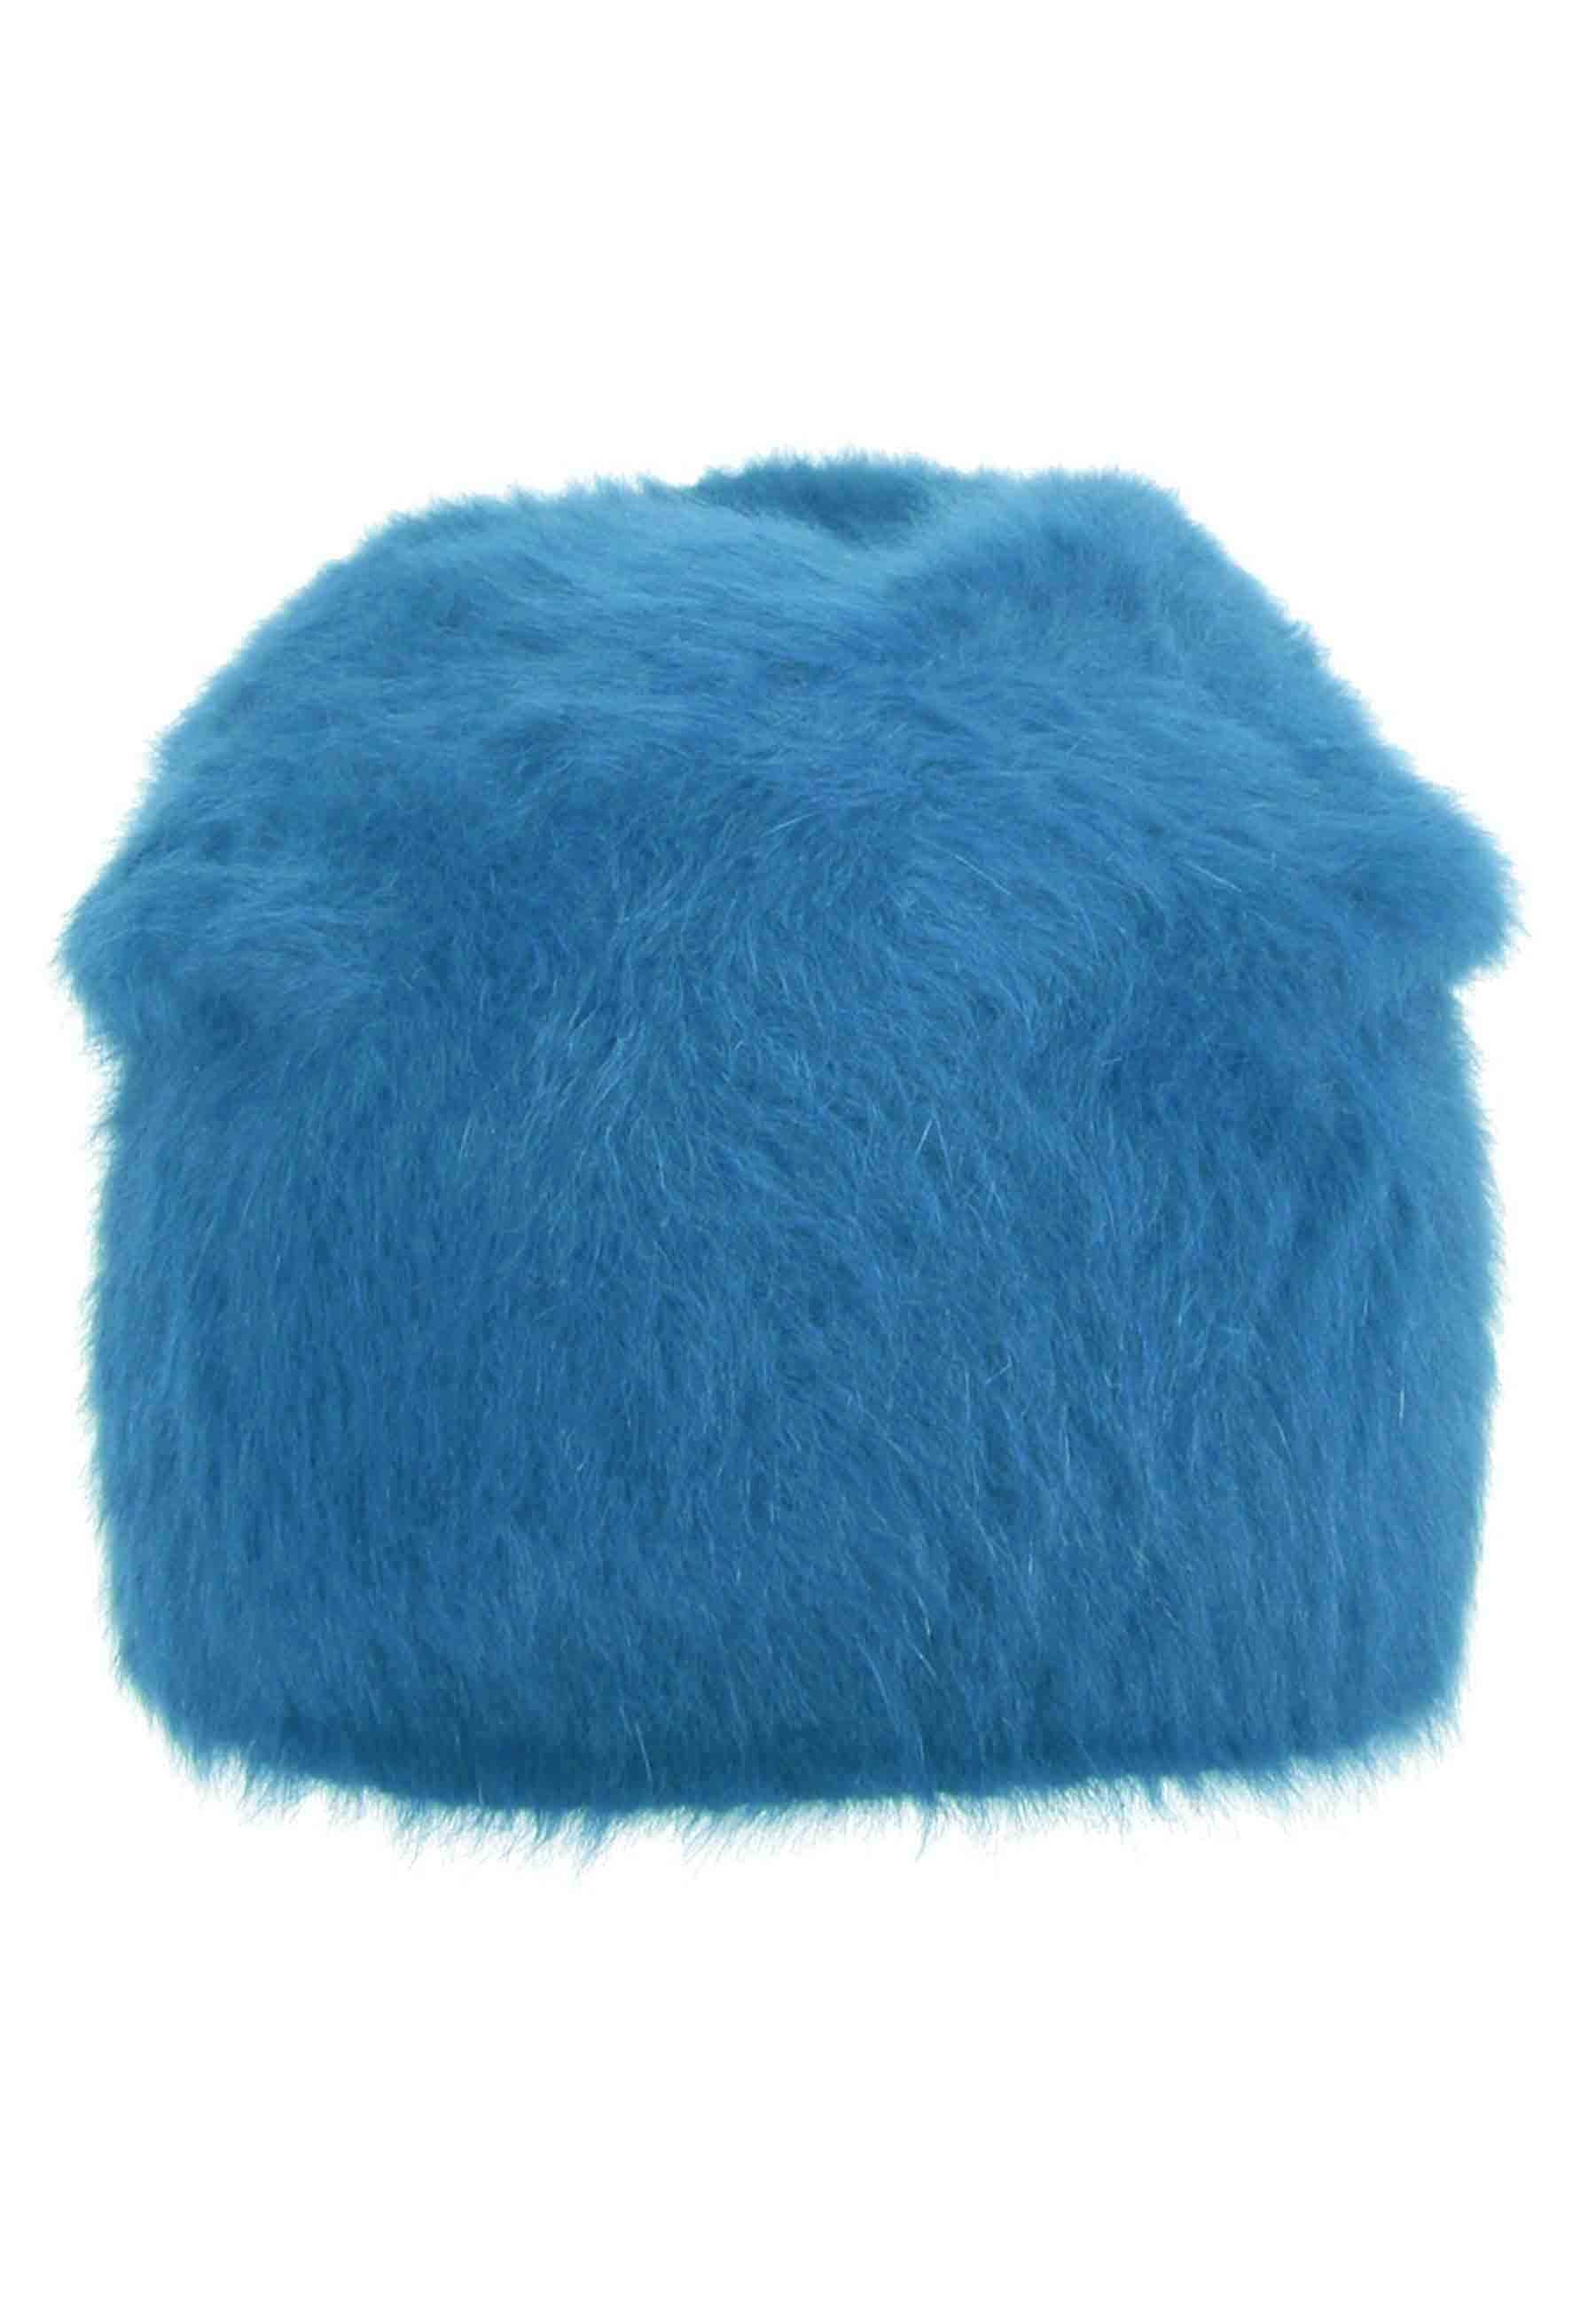 Copricapo in lana d'angora azzurro